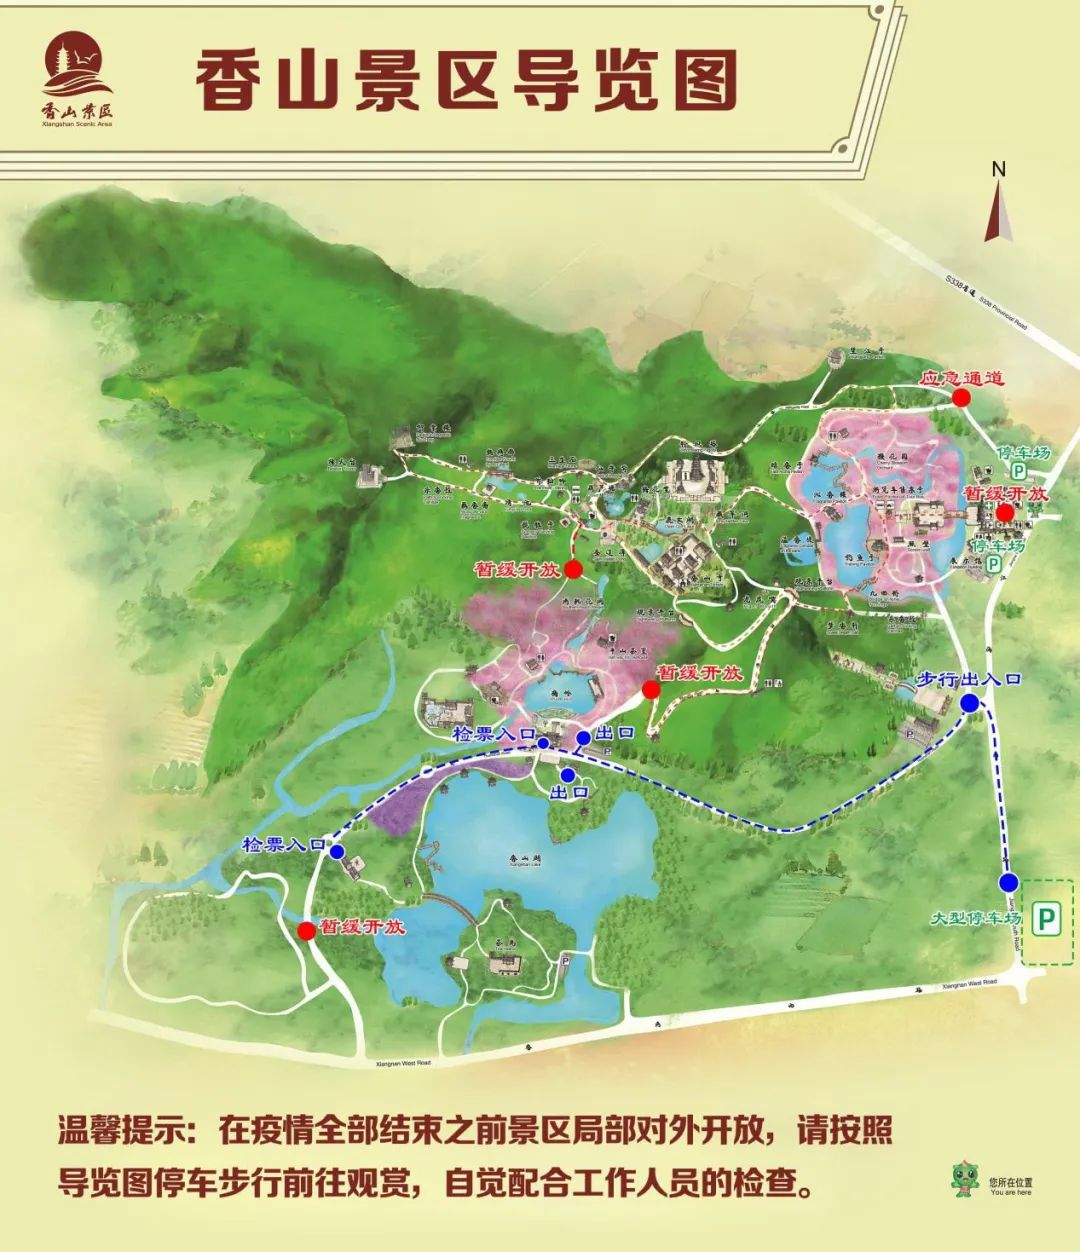 2020年2月24日起香山景区将有序开放!